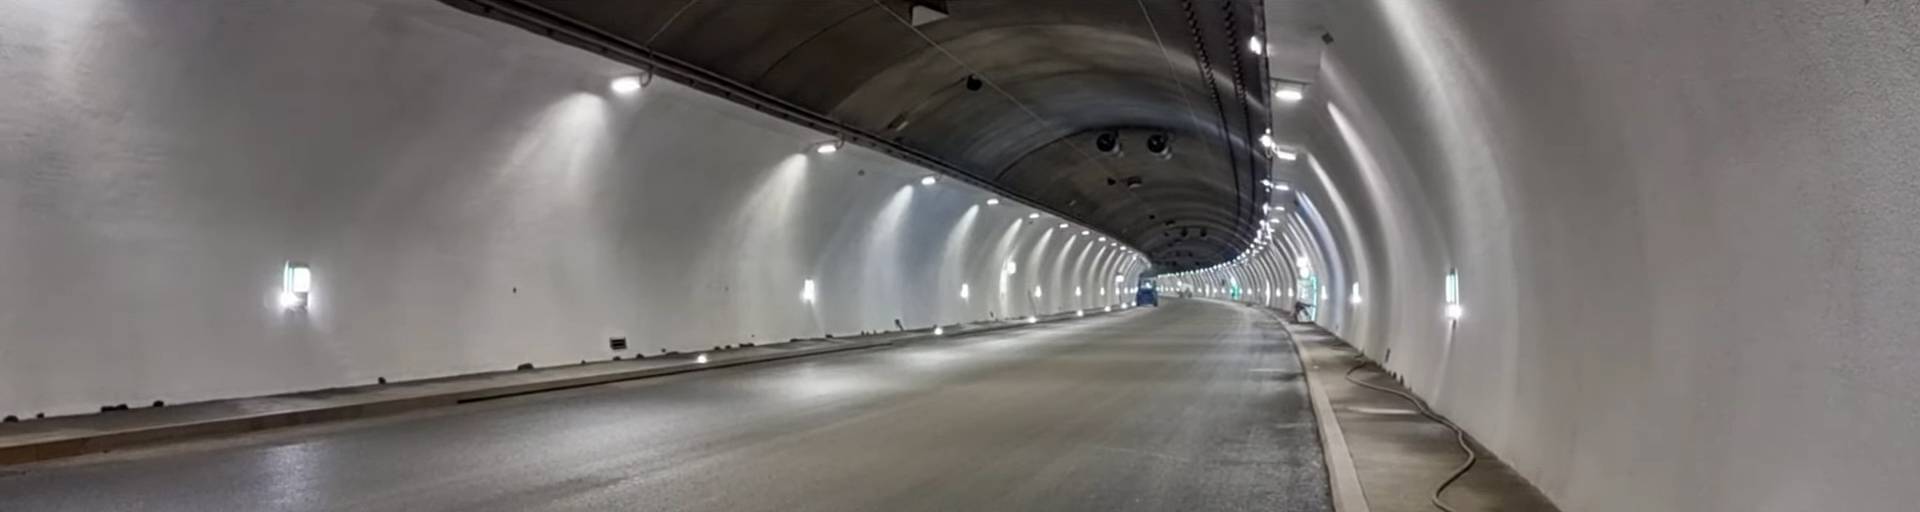 Tunel zakopianki pod Luboniem już gotowy, ale kierowcy przejadą nim dopiero pod koniec roku